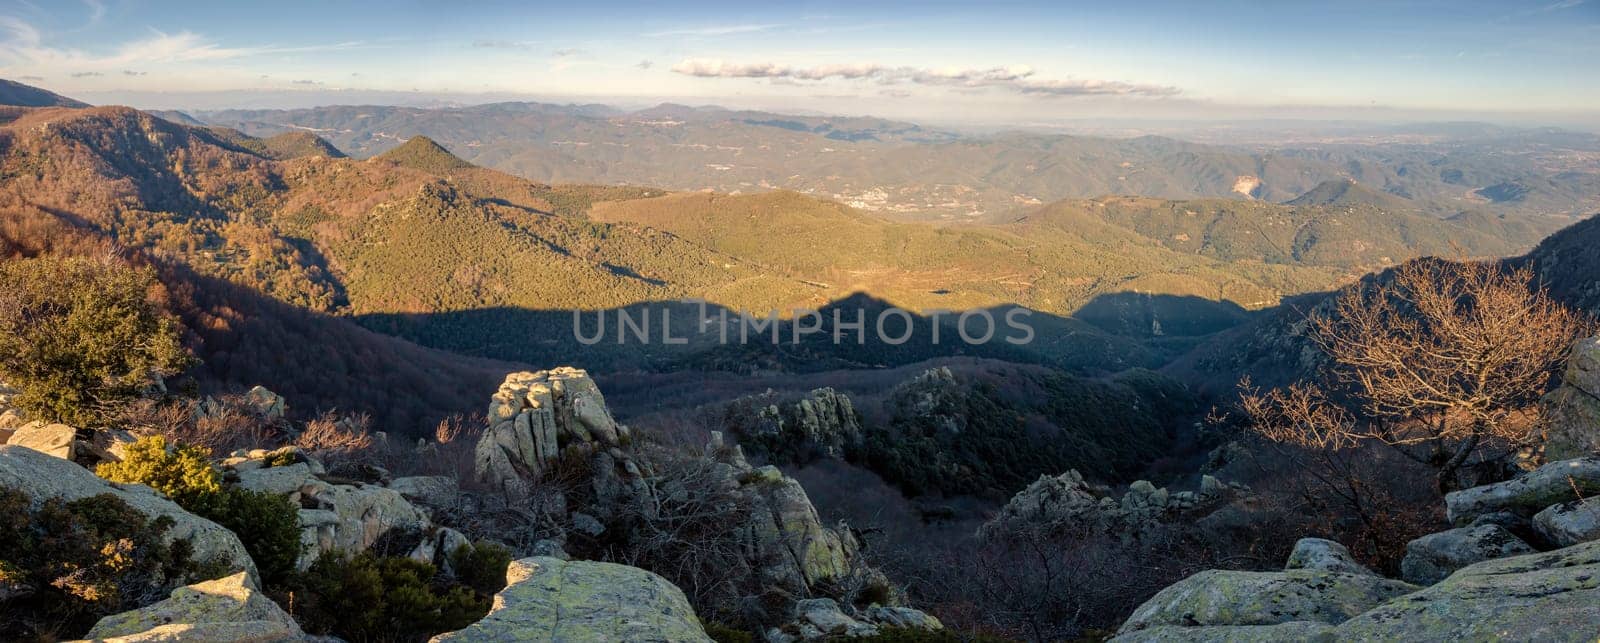 Panorama picture from Spanish mountain Montseny, near Santa fe del Montseny, Catalonia by Digoarpi